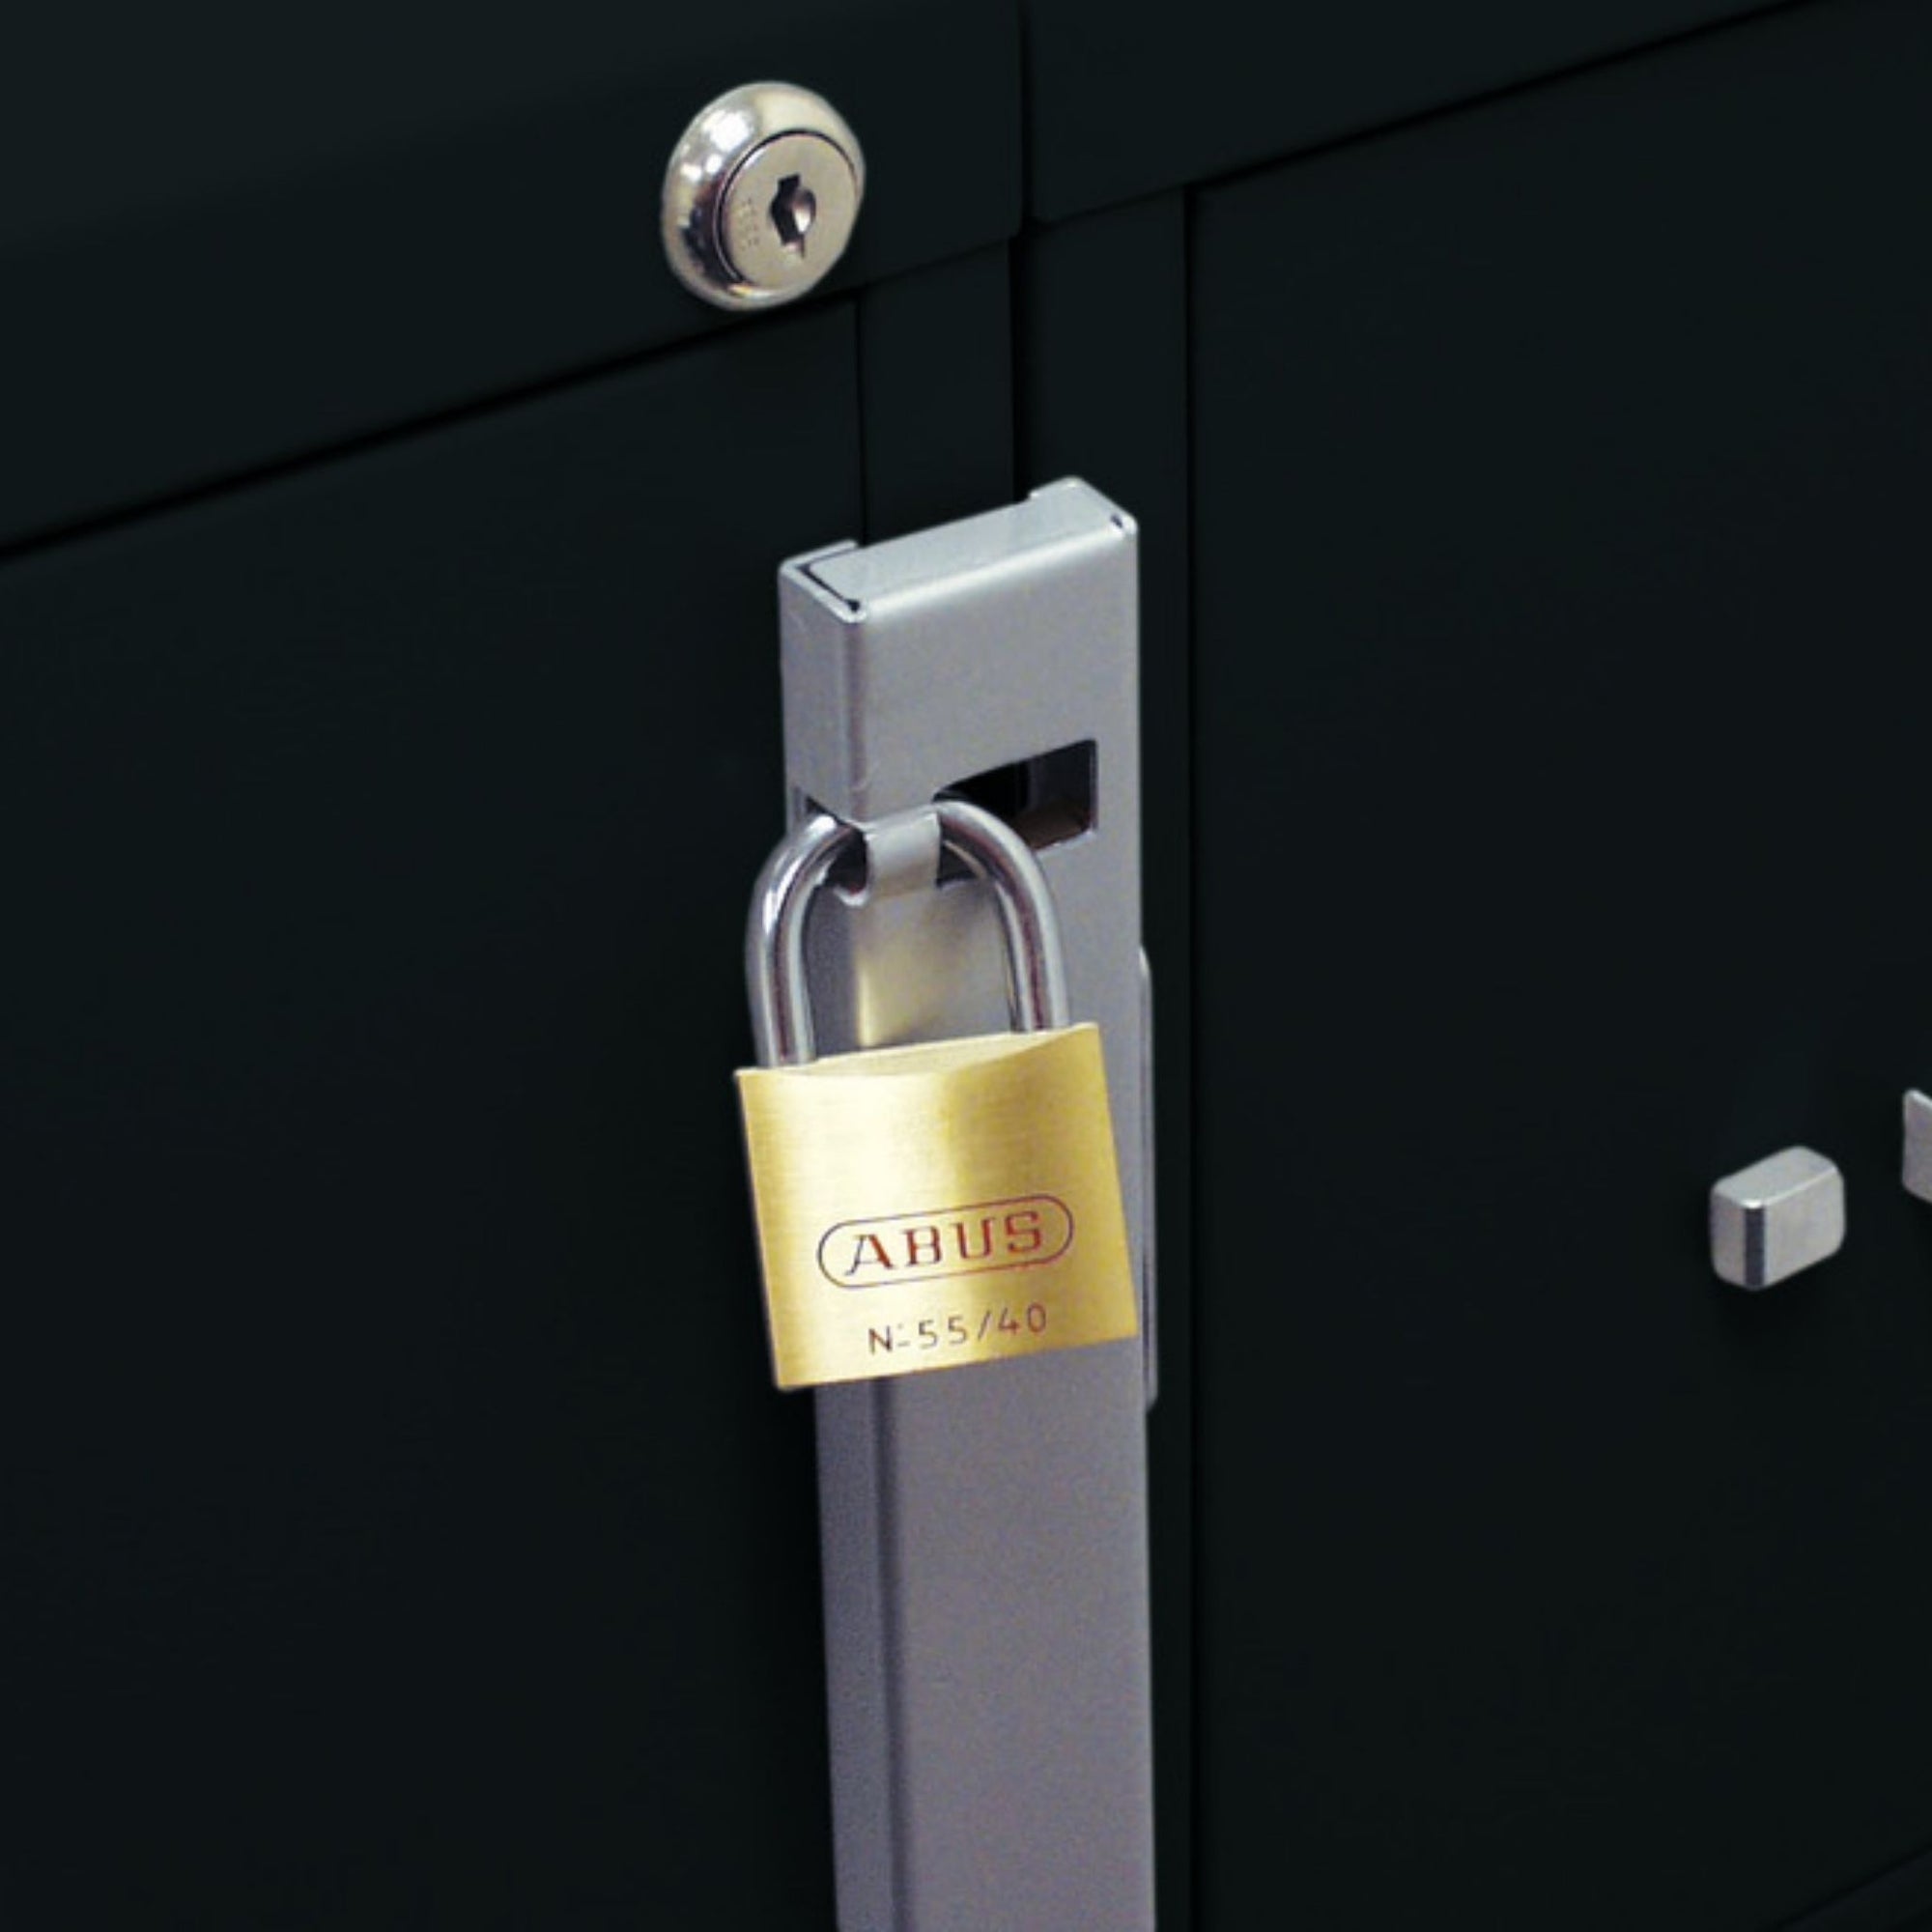 ABUS 07010, File Cabinet Locking Bar 1 Drawer